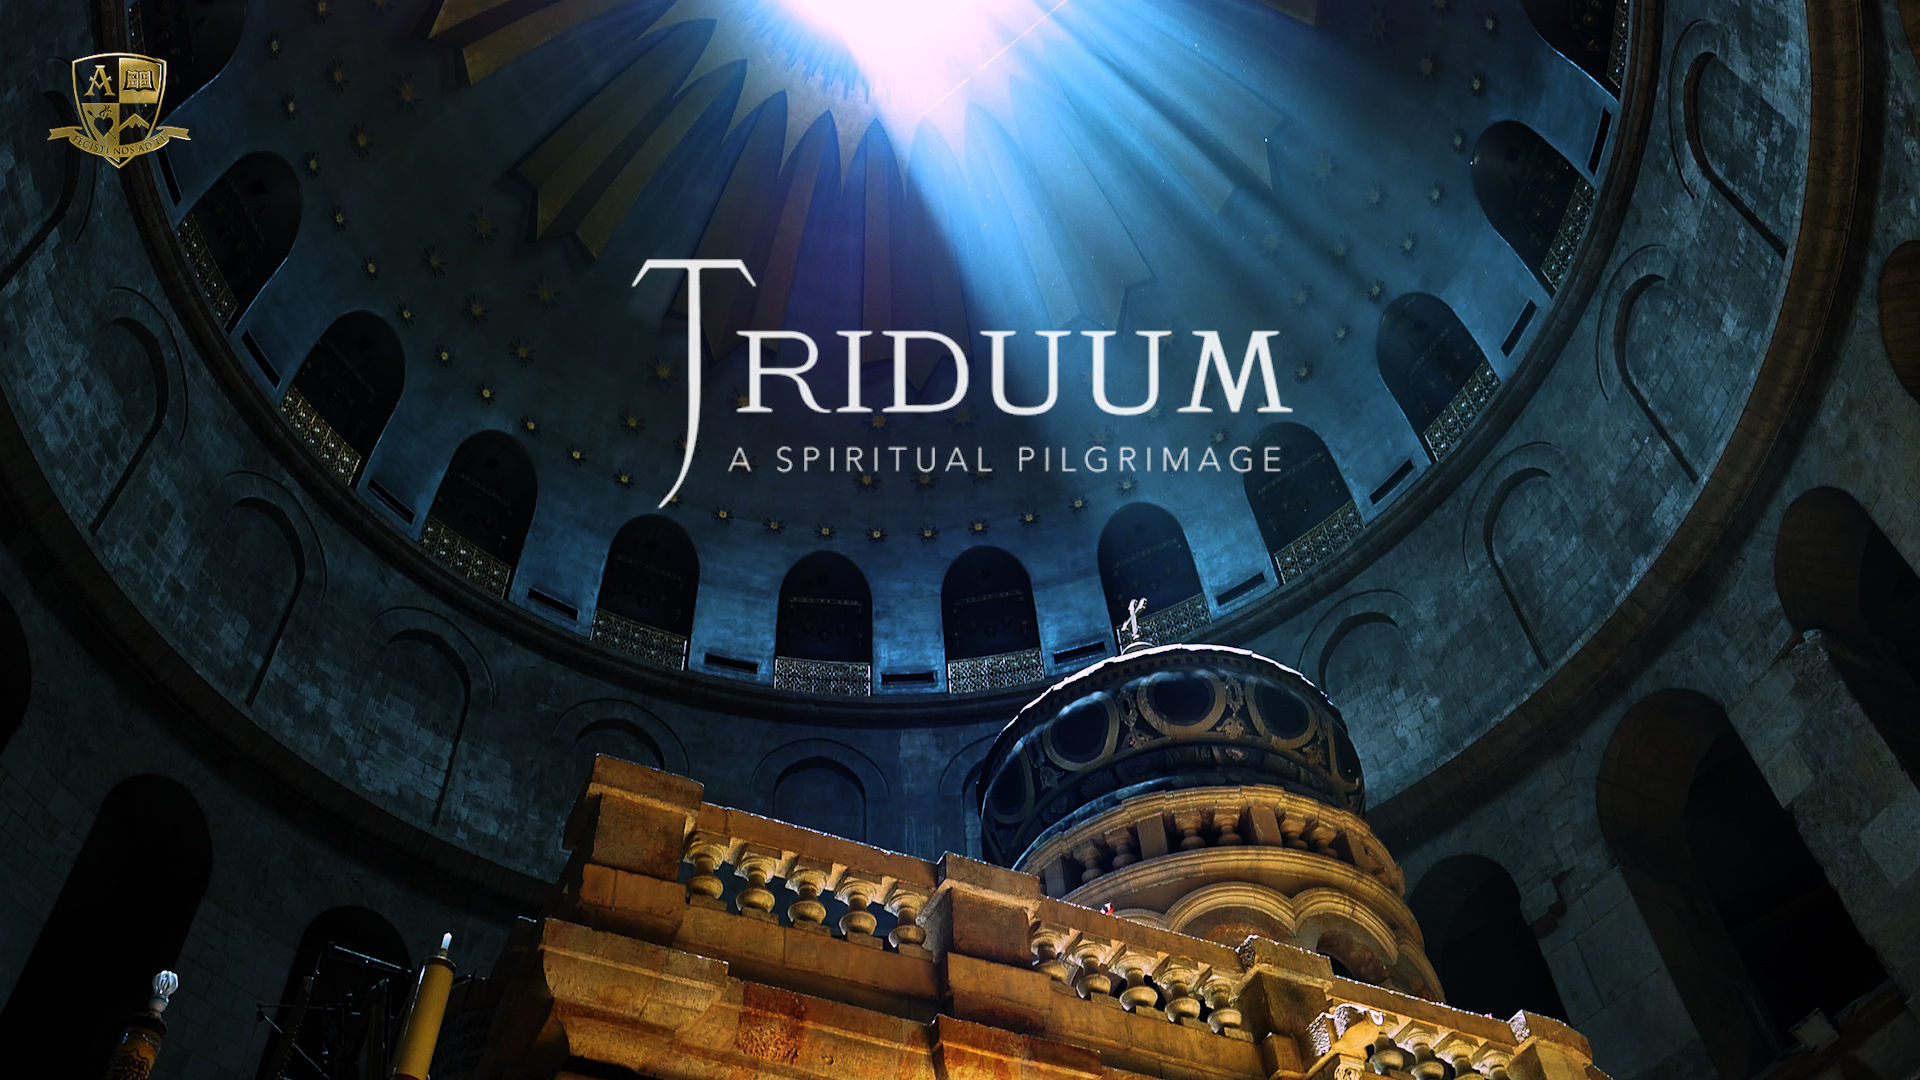 Dark church with the word Triduum written in white